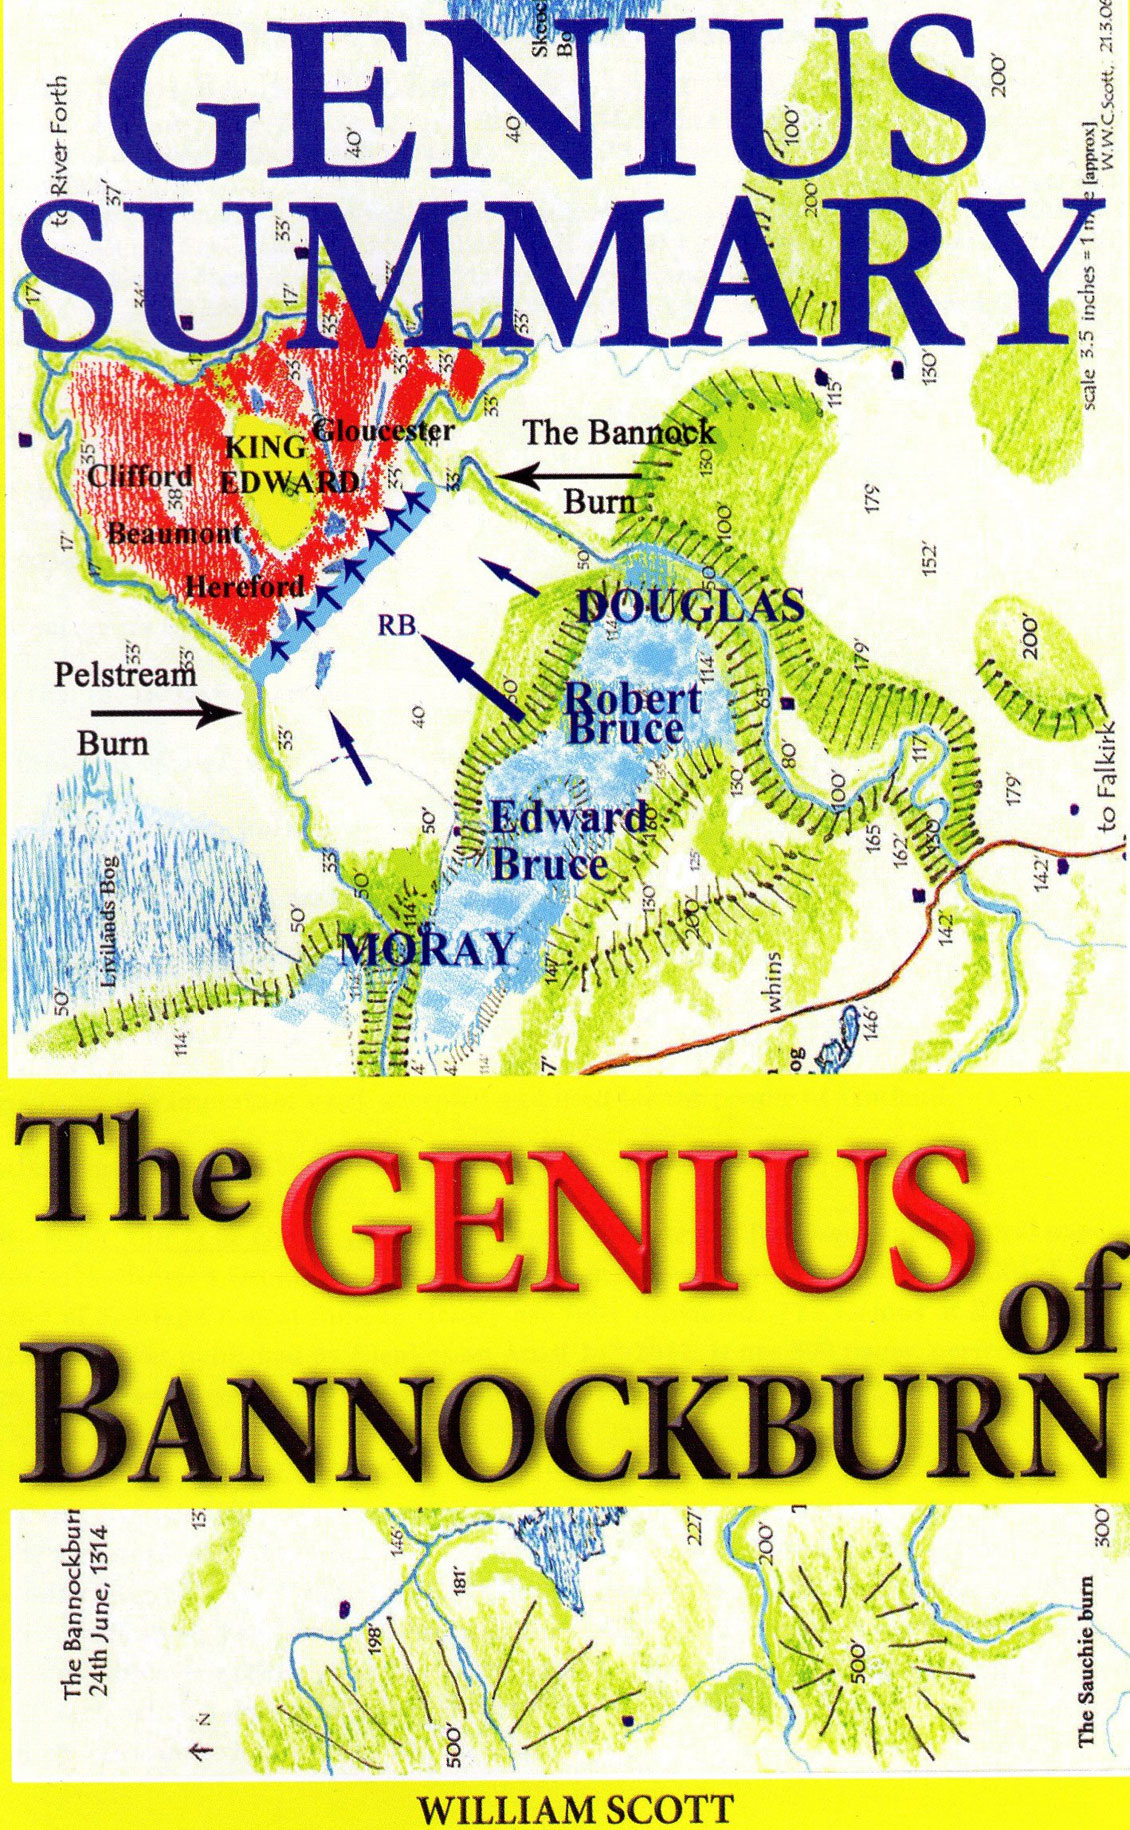 © Elenkus: The genius of Bannockburn book cover